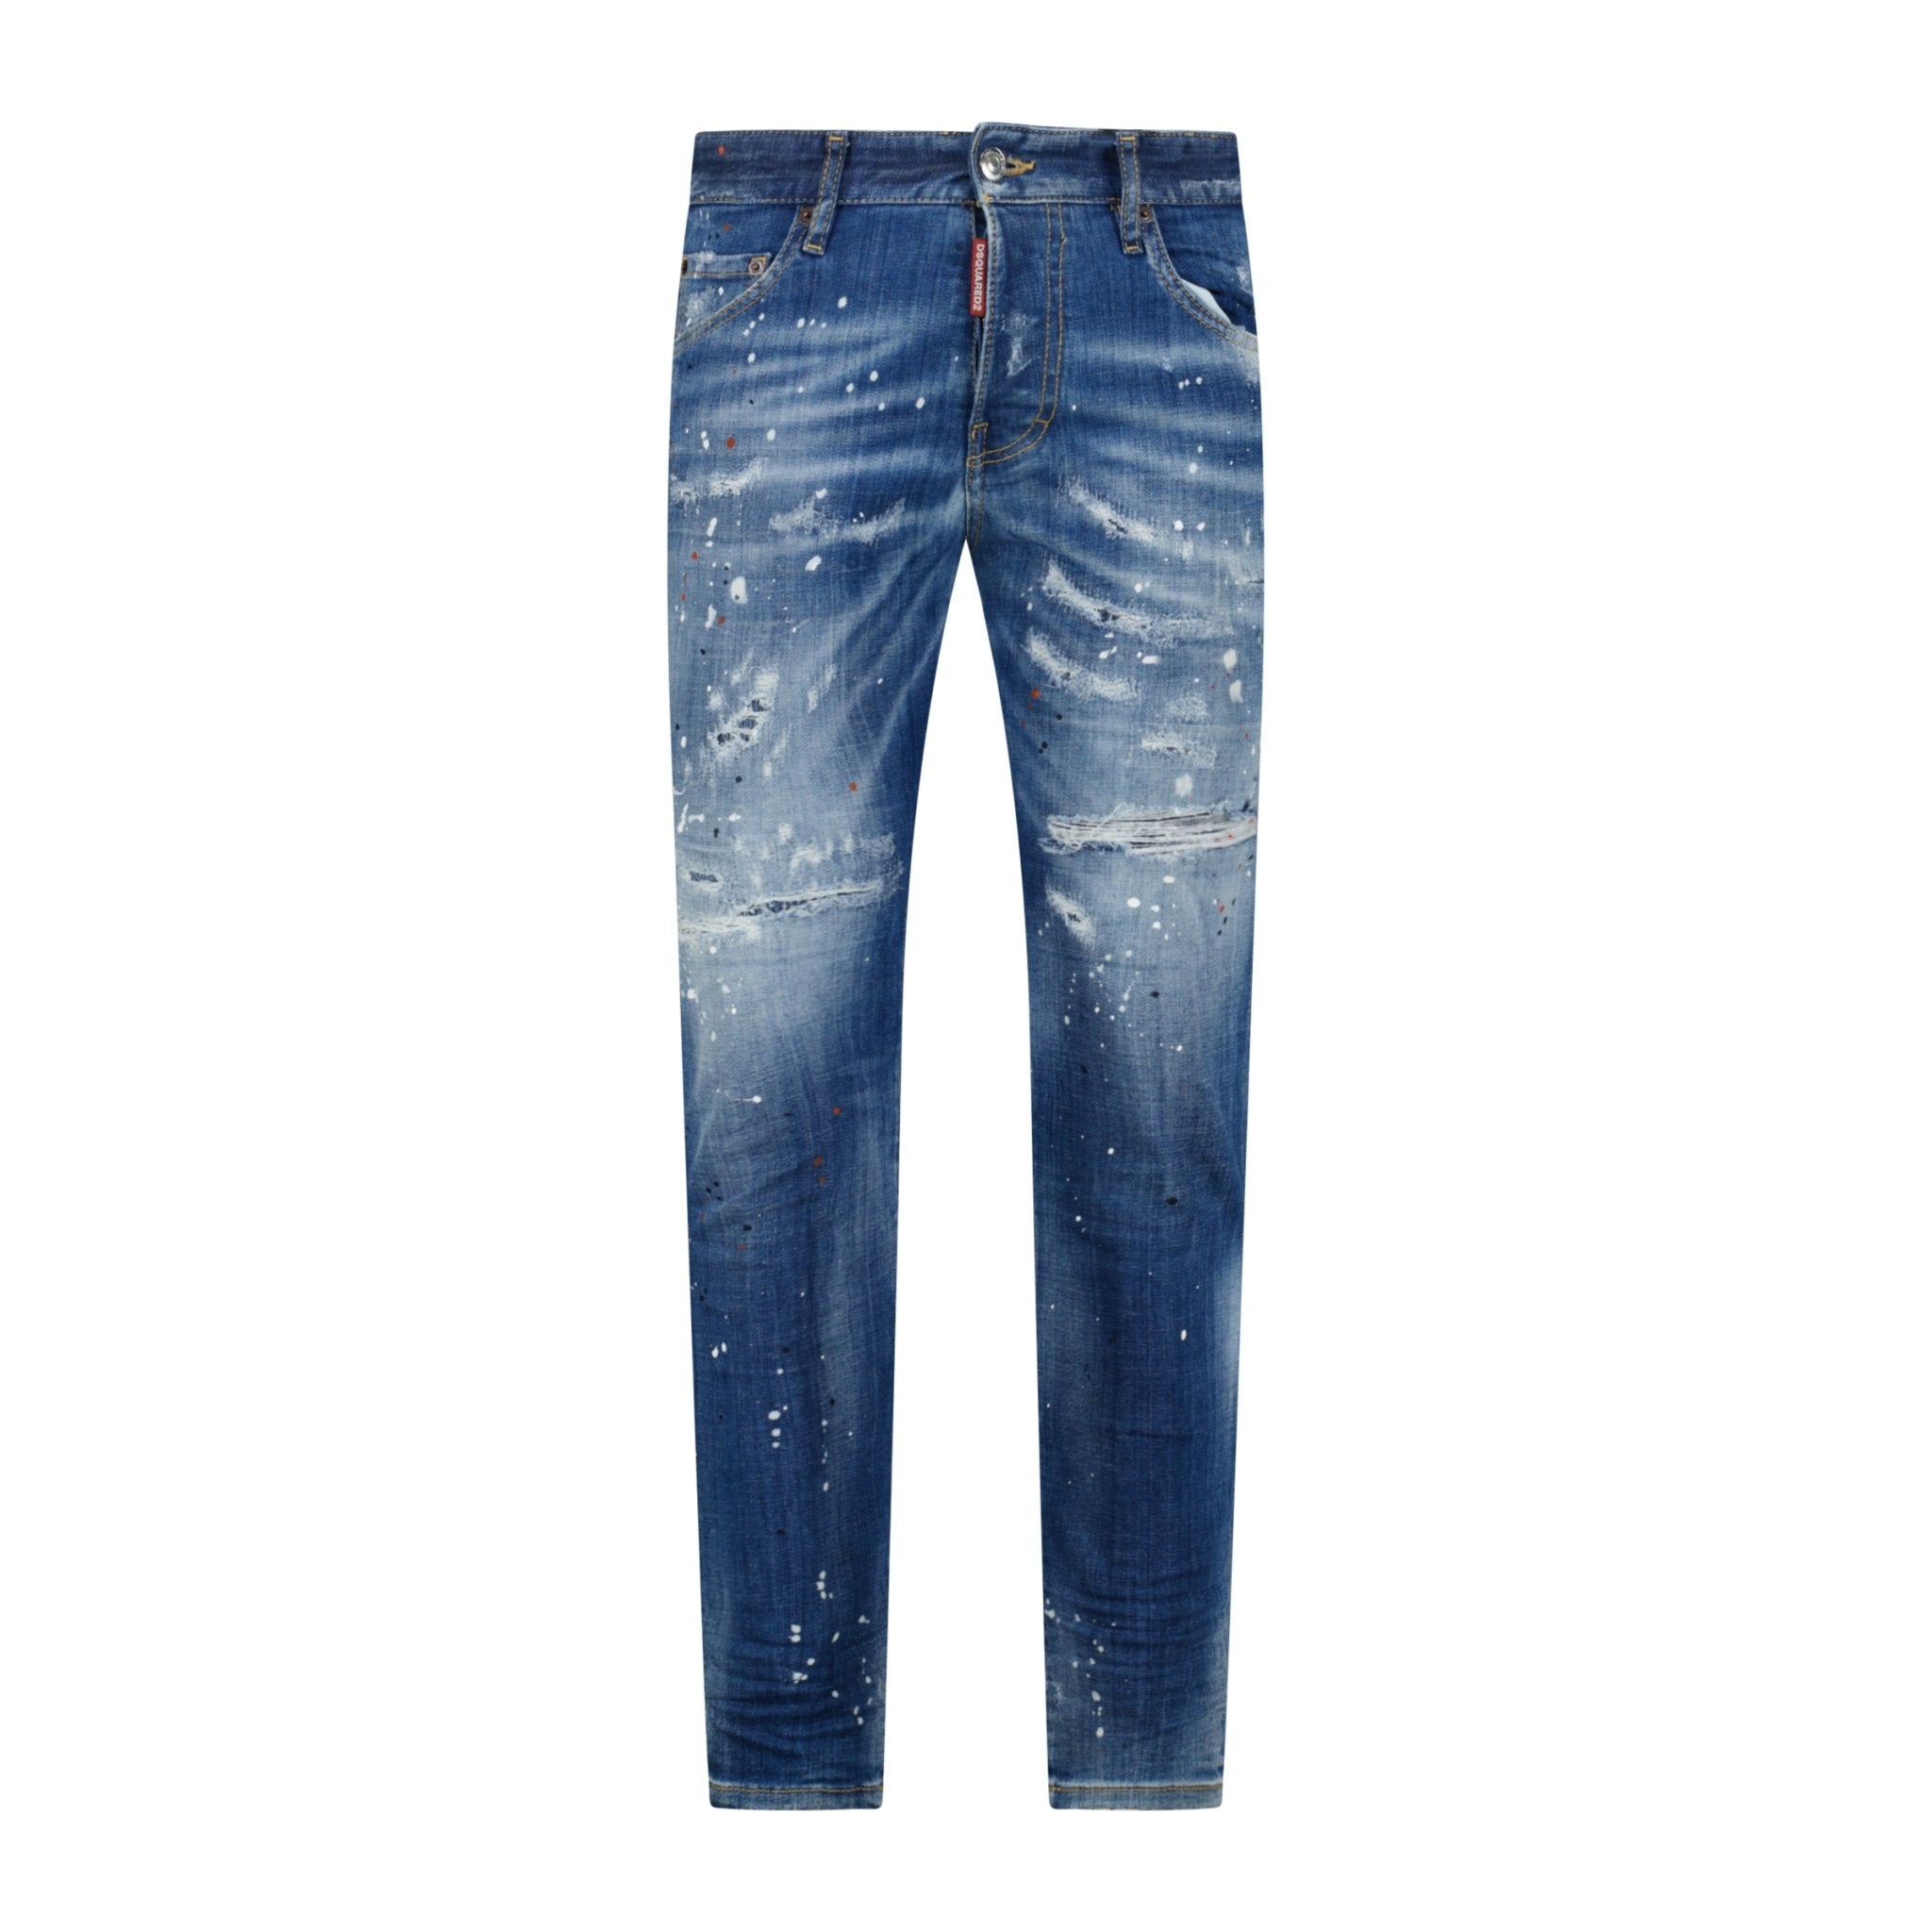 DSquared2 'Skater Jean' Orange & White Paint Splatter Jeans Blue